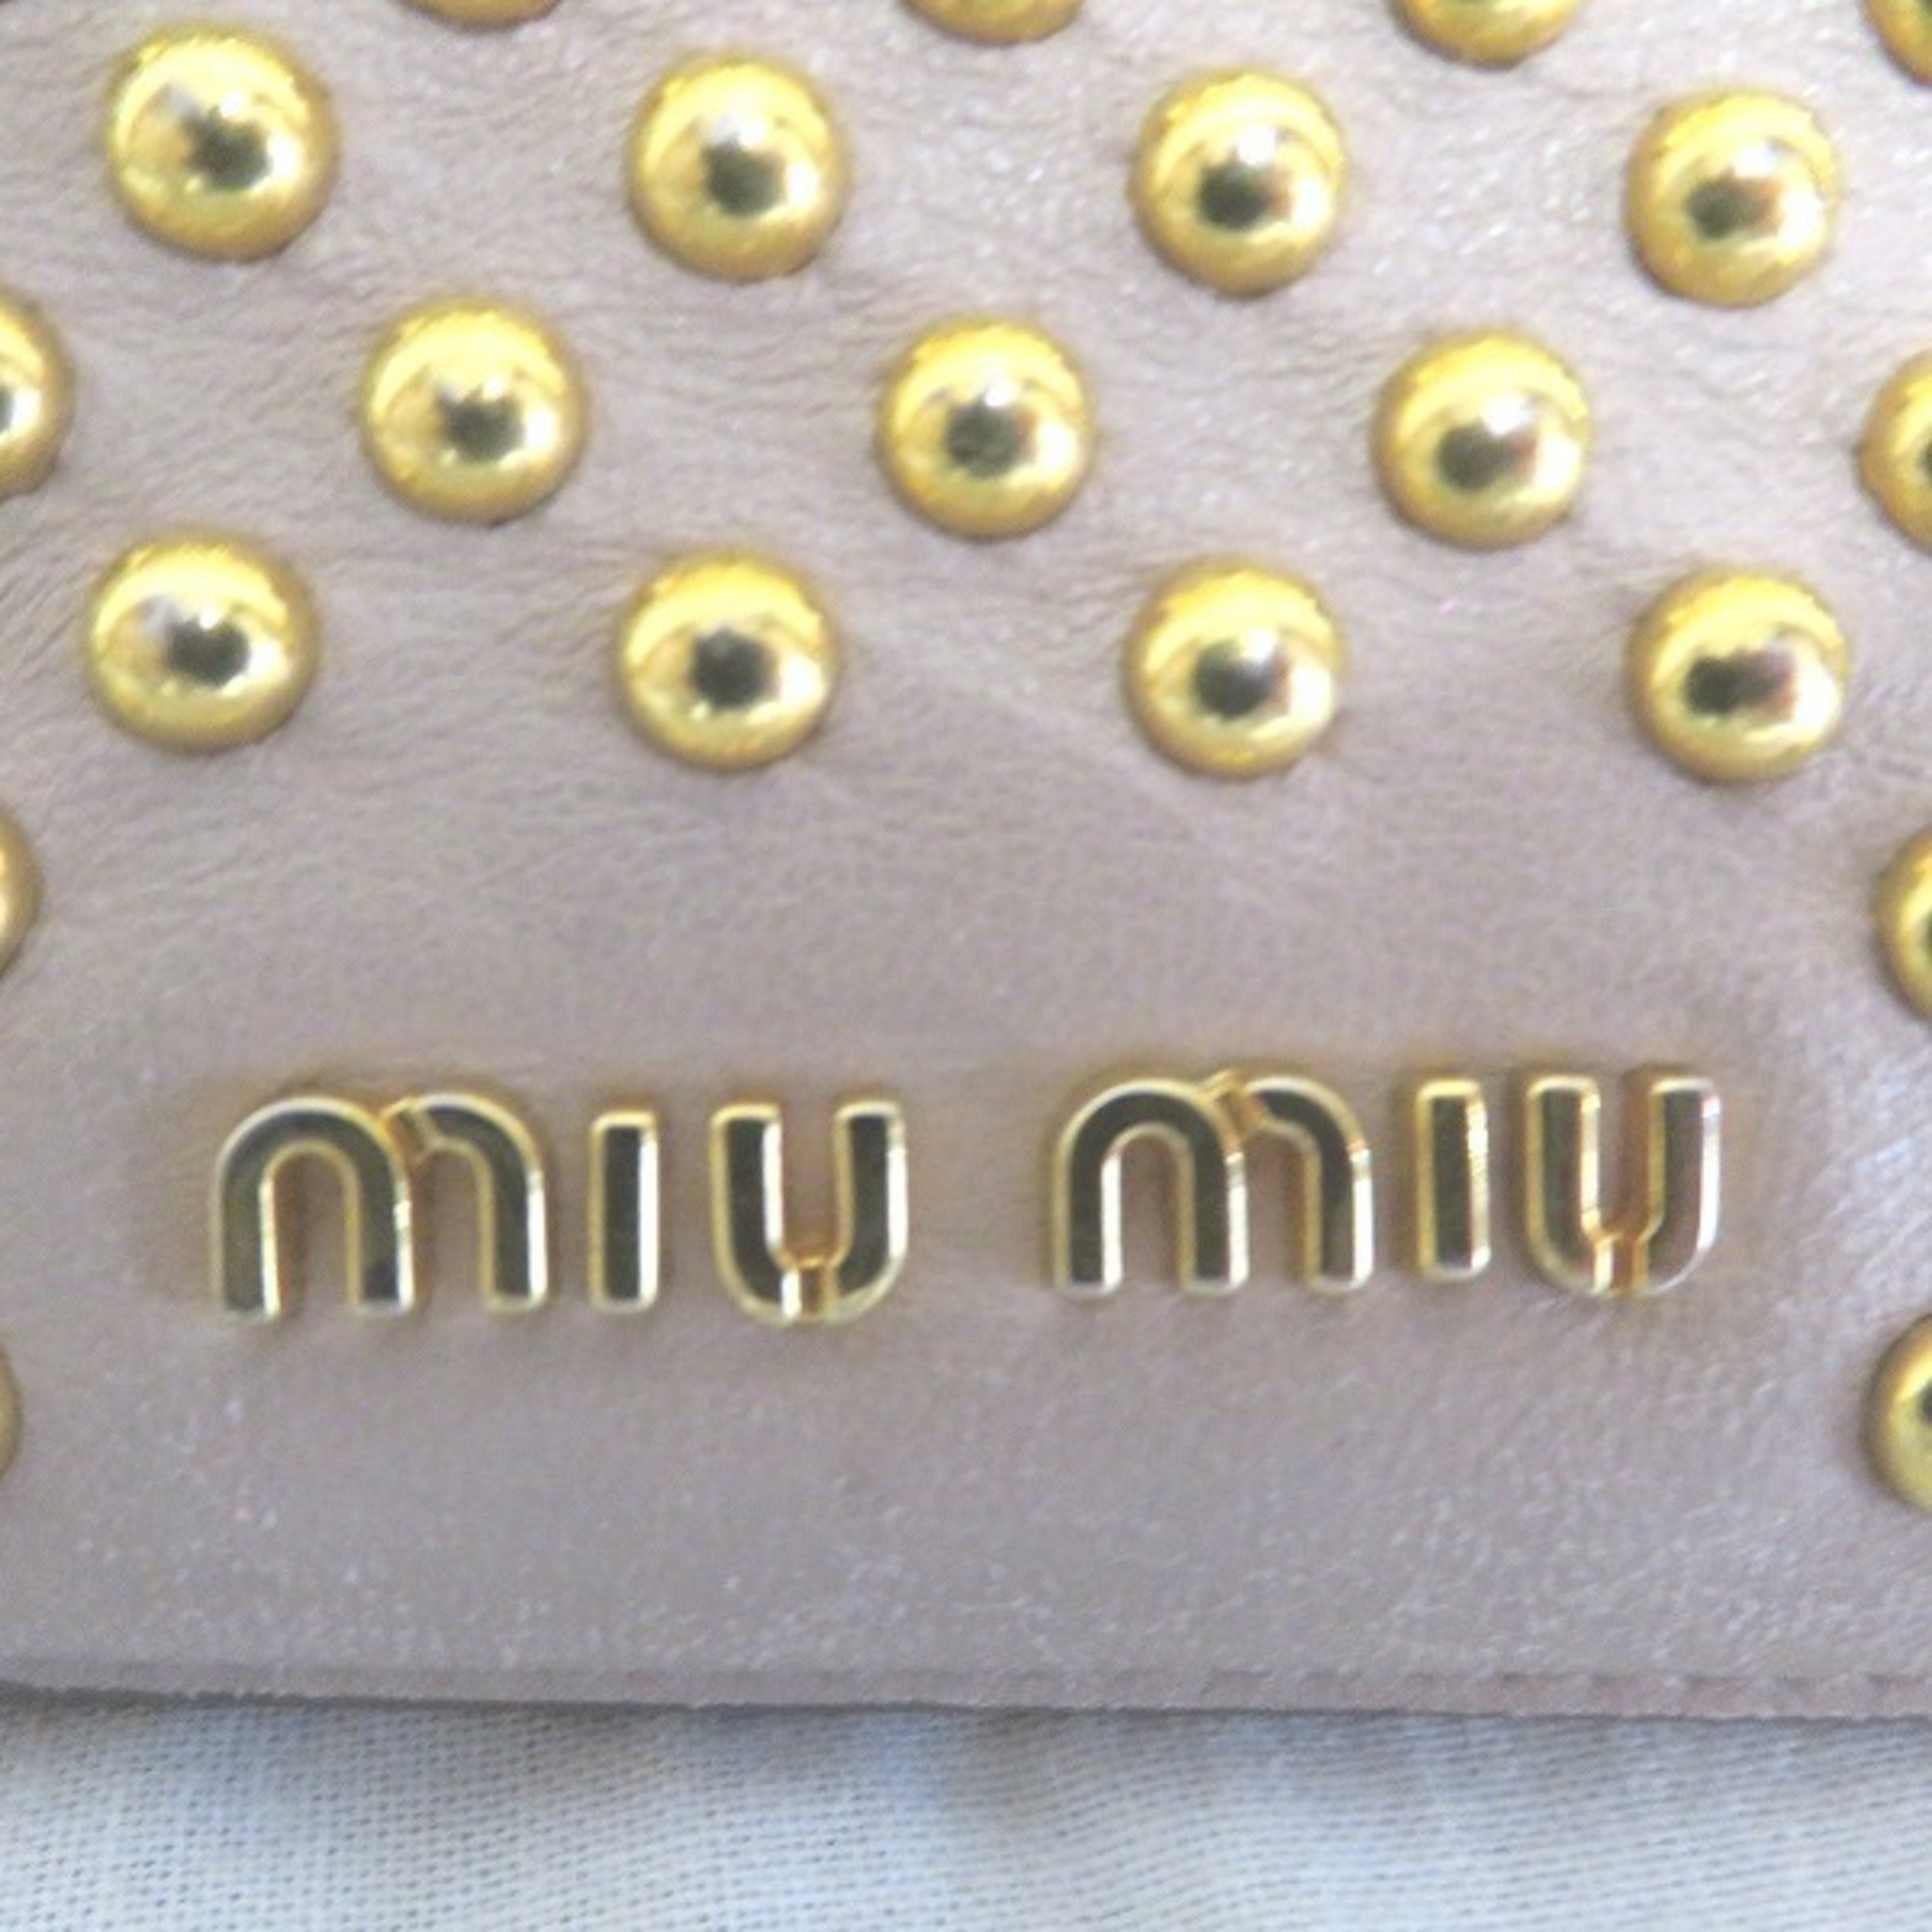 Miu Miu Miu Pink Leather Brand Accessories iPad Case Unisex